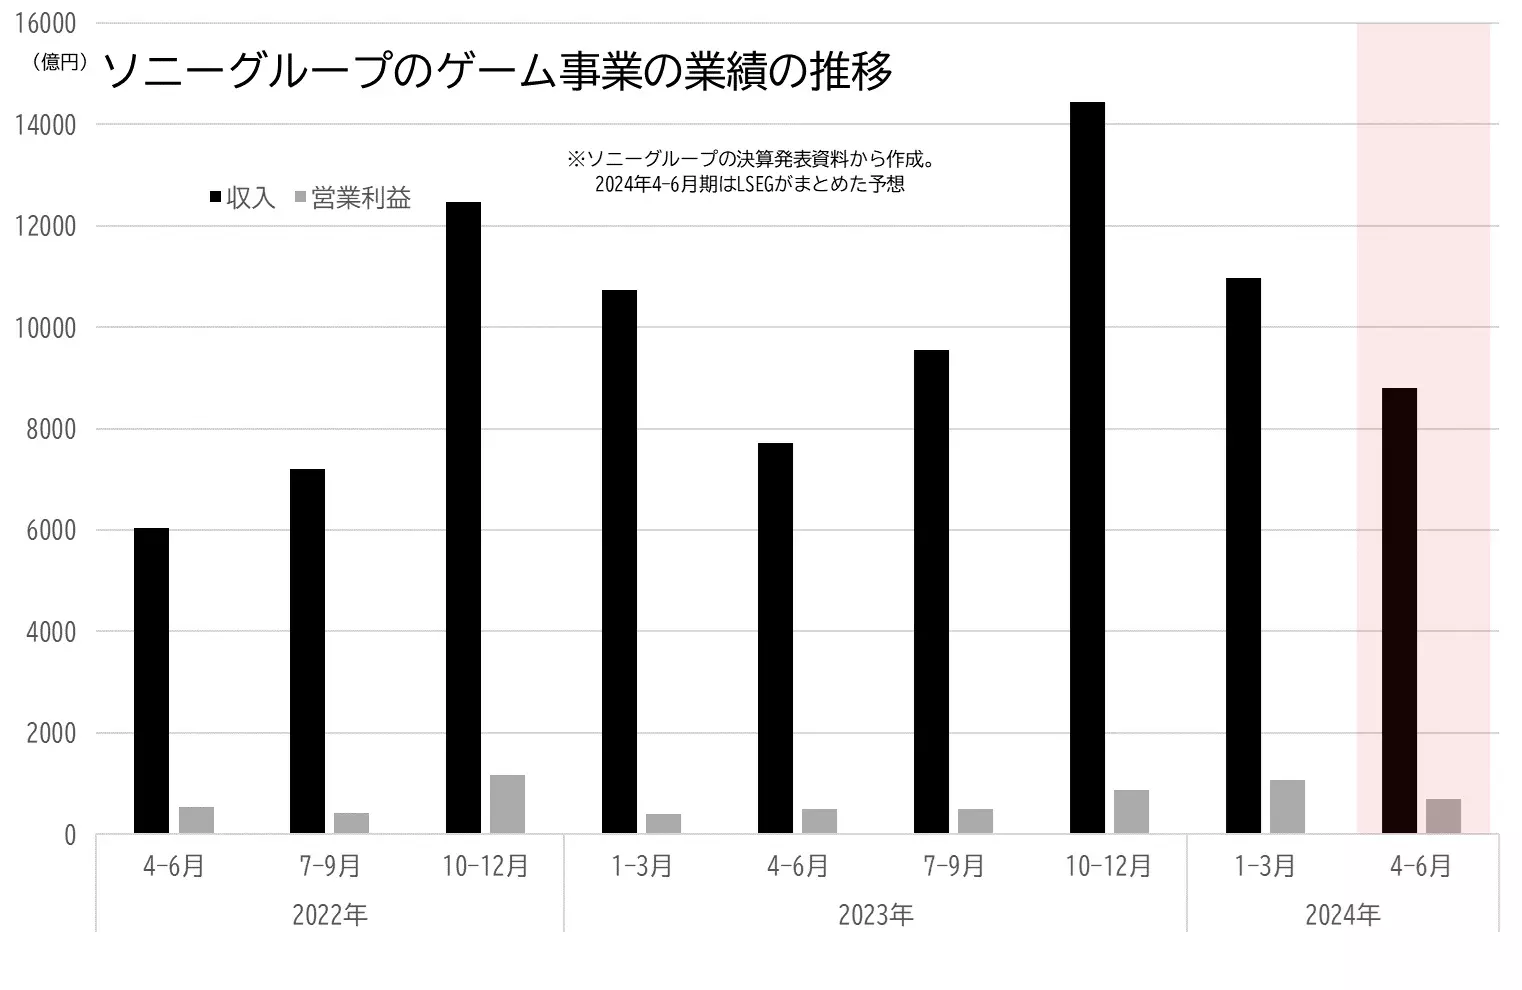 ソニーグループのゲーム事業の業績（収入、営業利益）の推移のグラフ